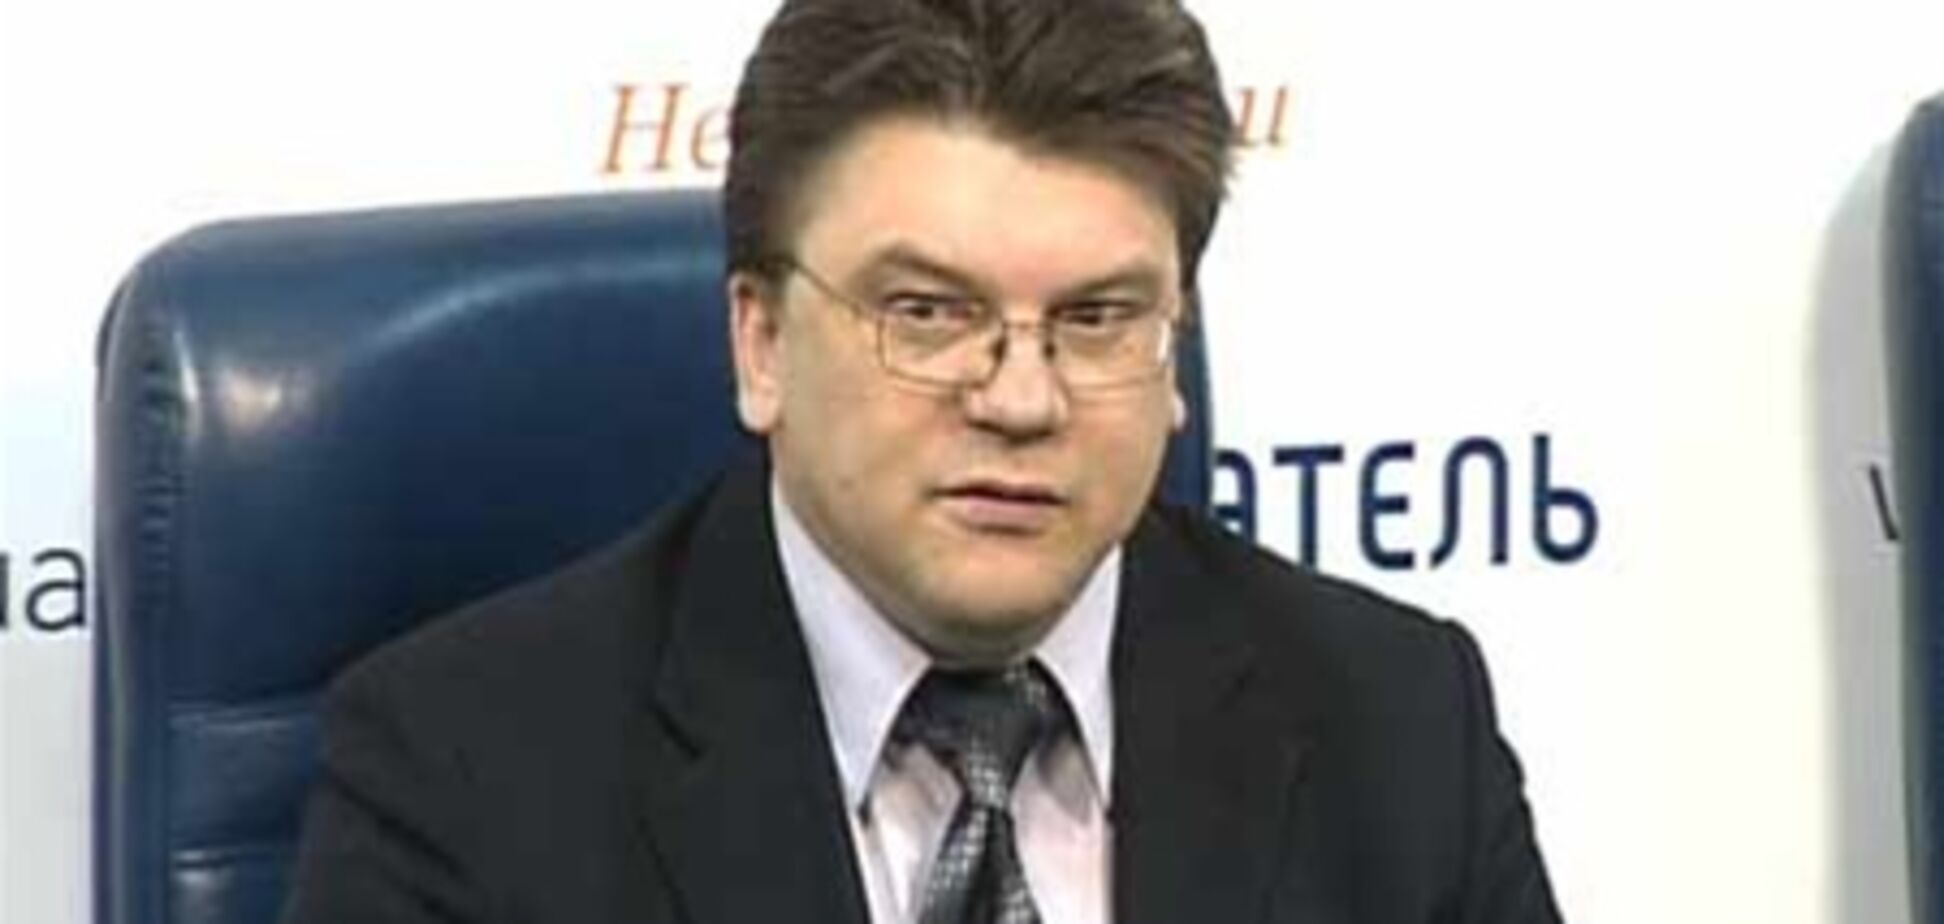 Вопрос о декриминализации статьи Тимошенко может решиться на референдуме - Жданов